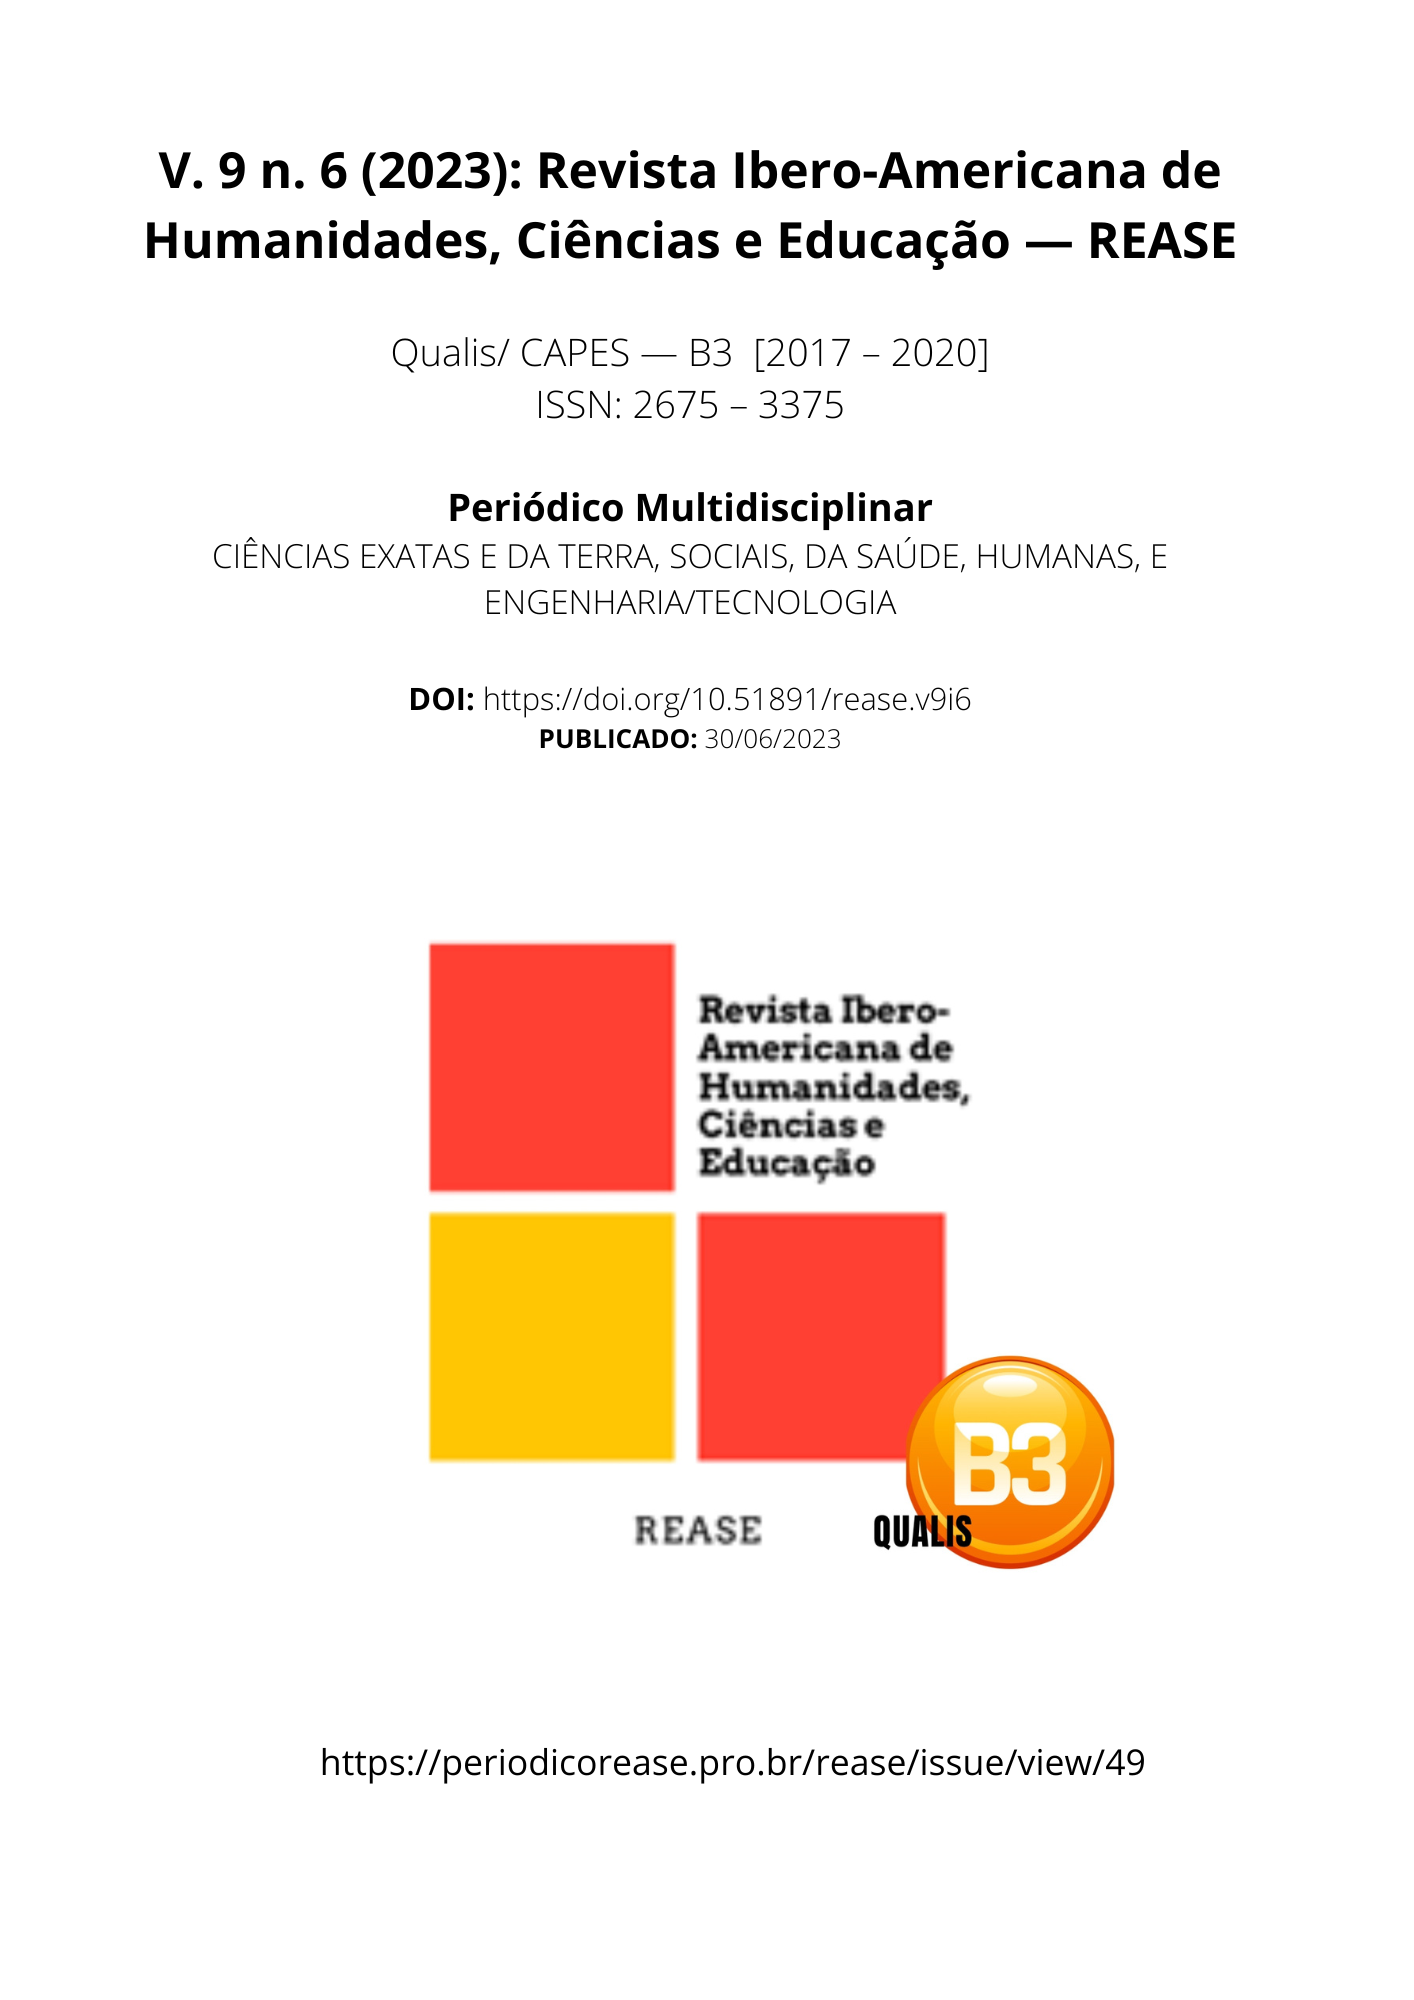 					View Vol. 9 No. 6 (2023): Revista Ibero-Americana de Humanidades, Ciências e Educação- REASE 
				